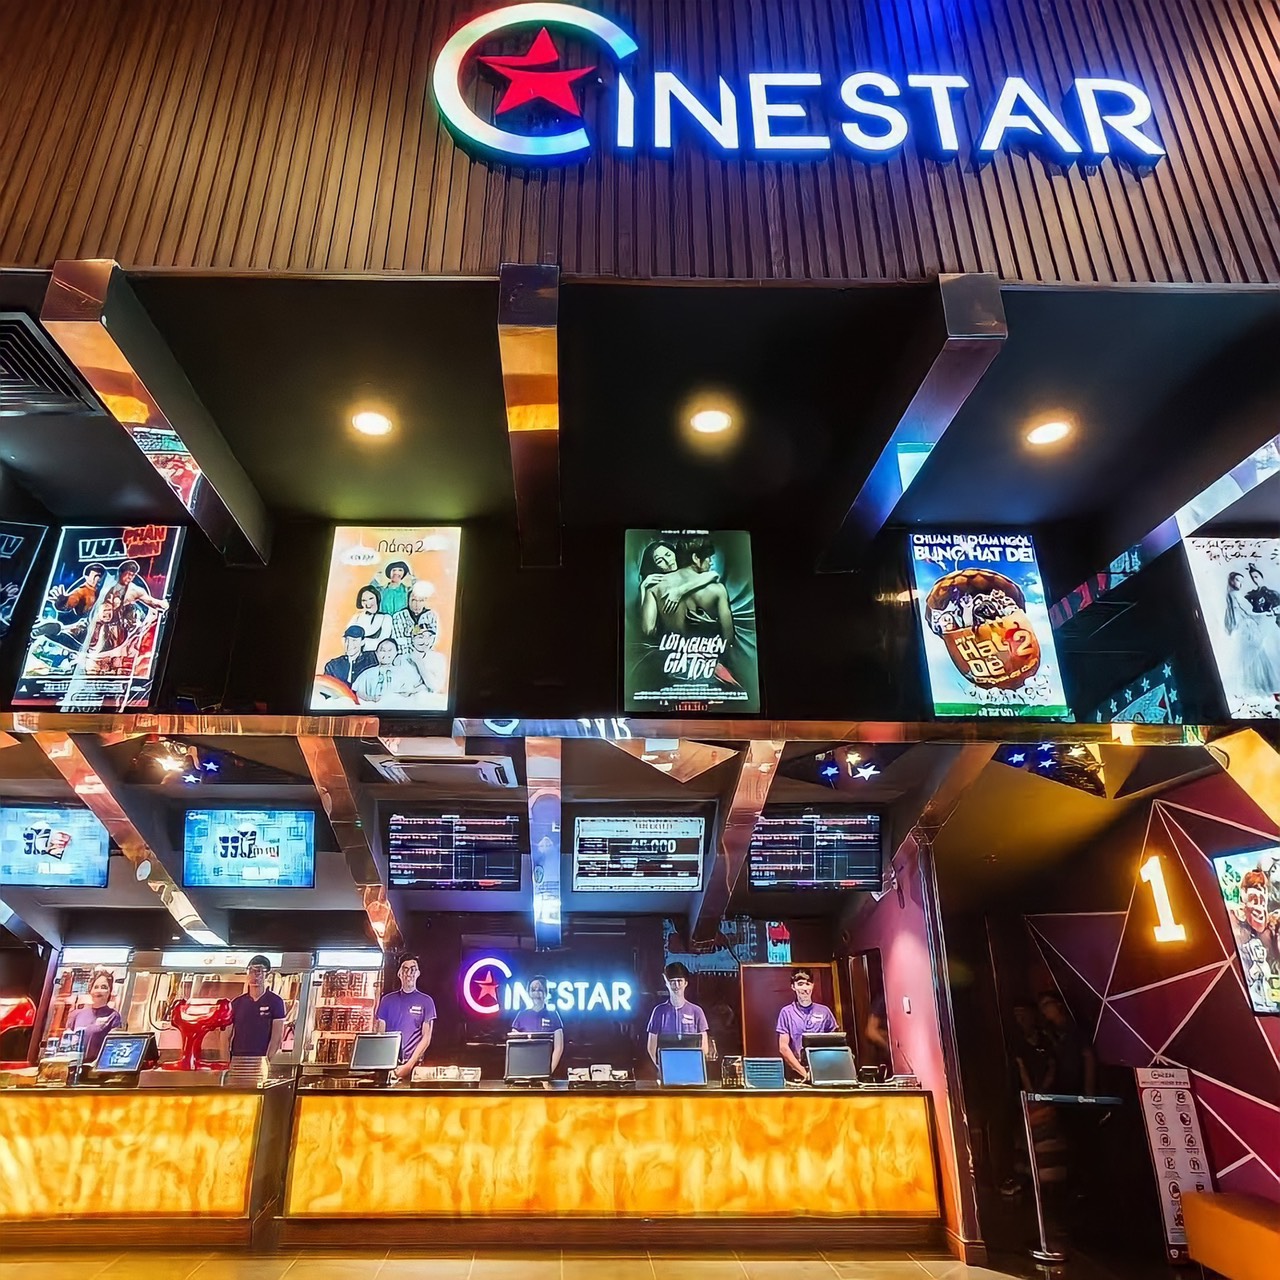 Cinestar - Hệ Thống Rạp Chiếu Phim Giá Rẻ, Hiện Đại Bậc Nhất